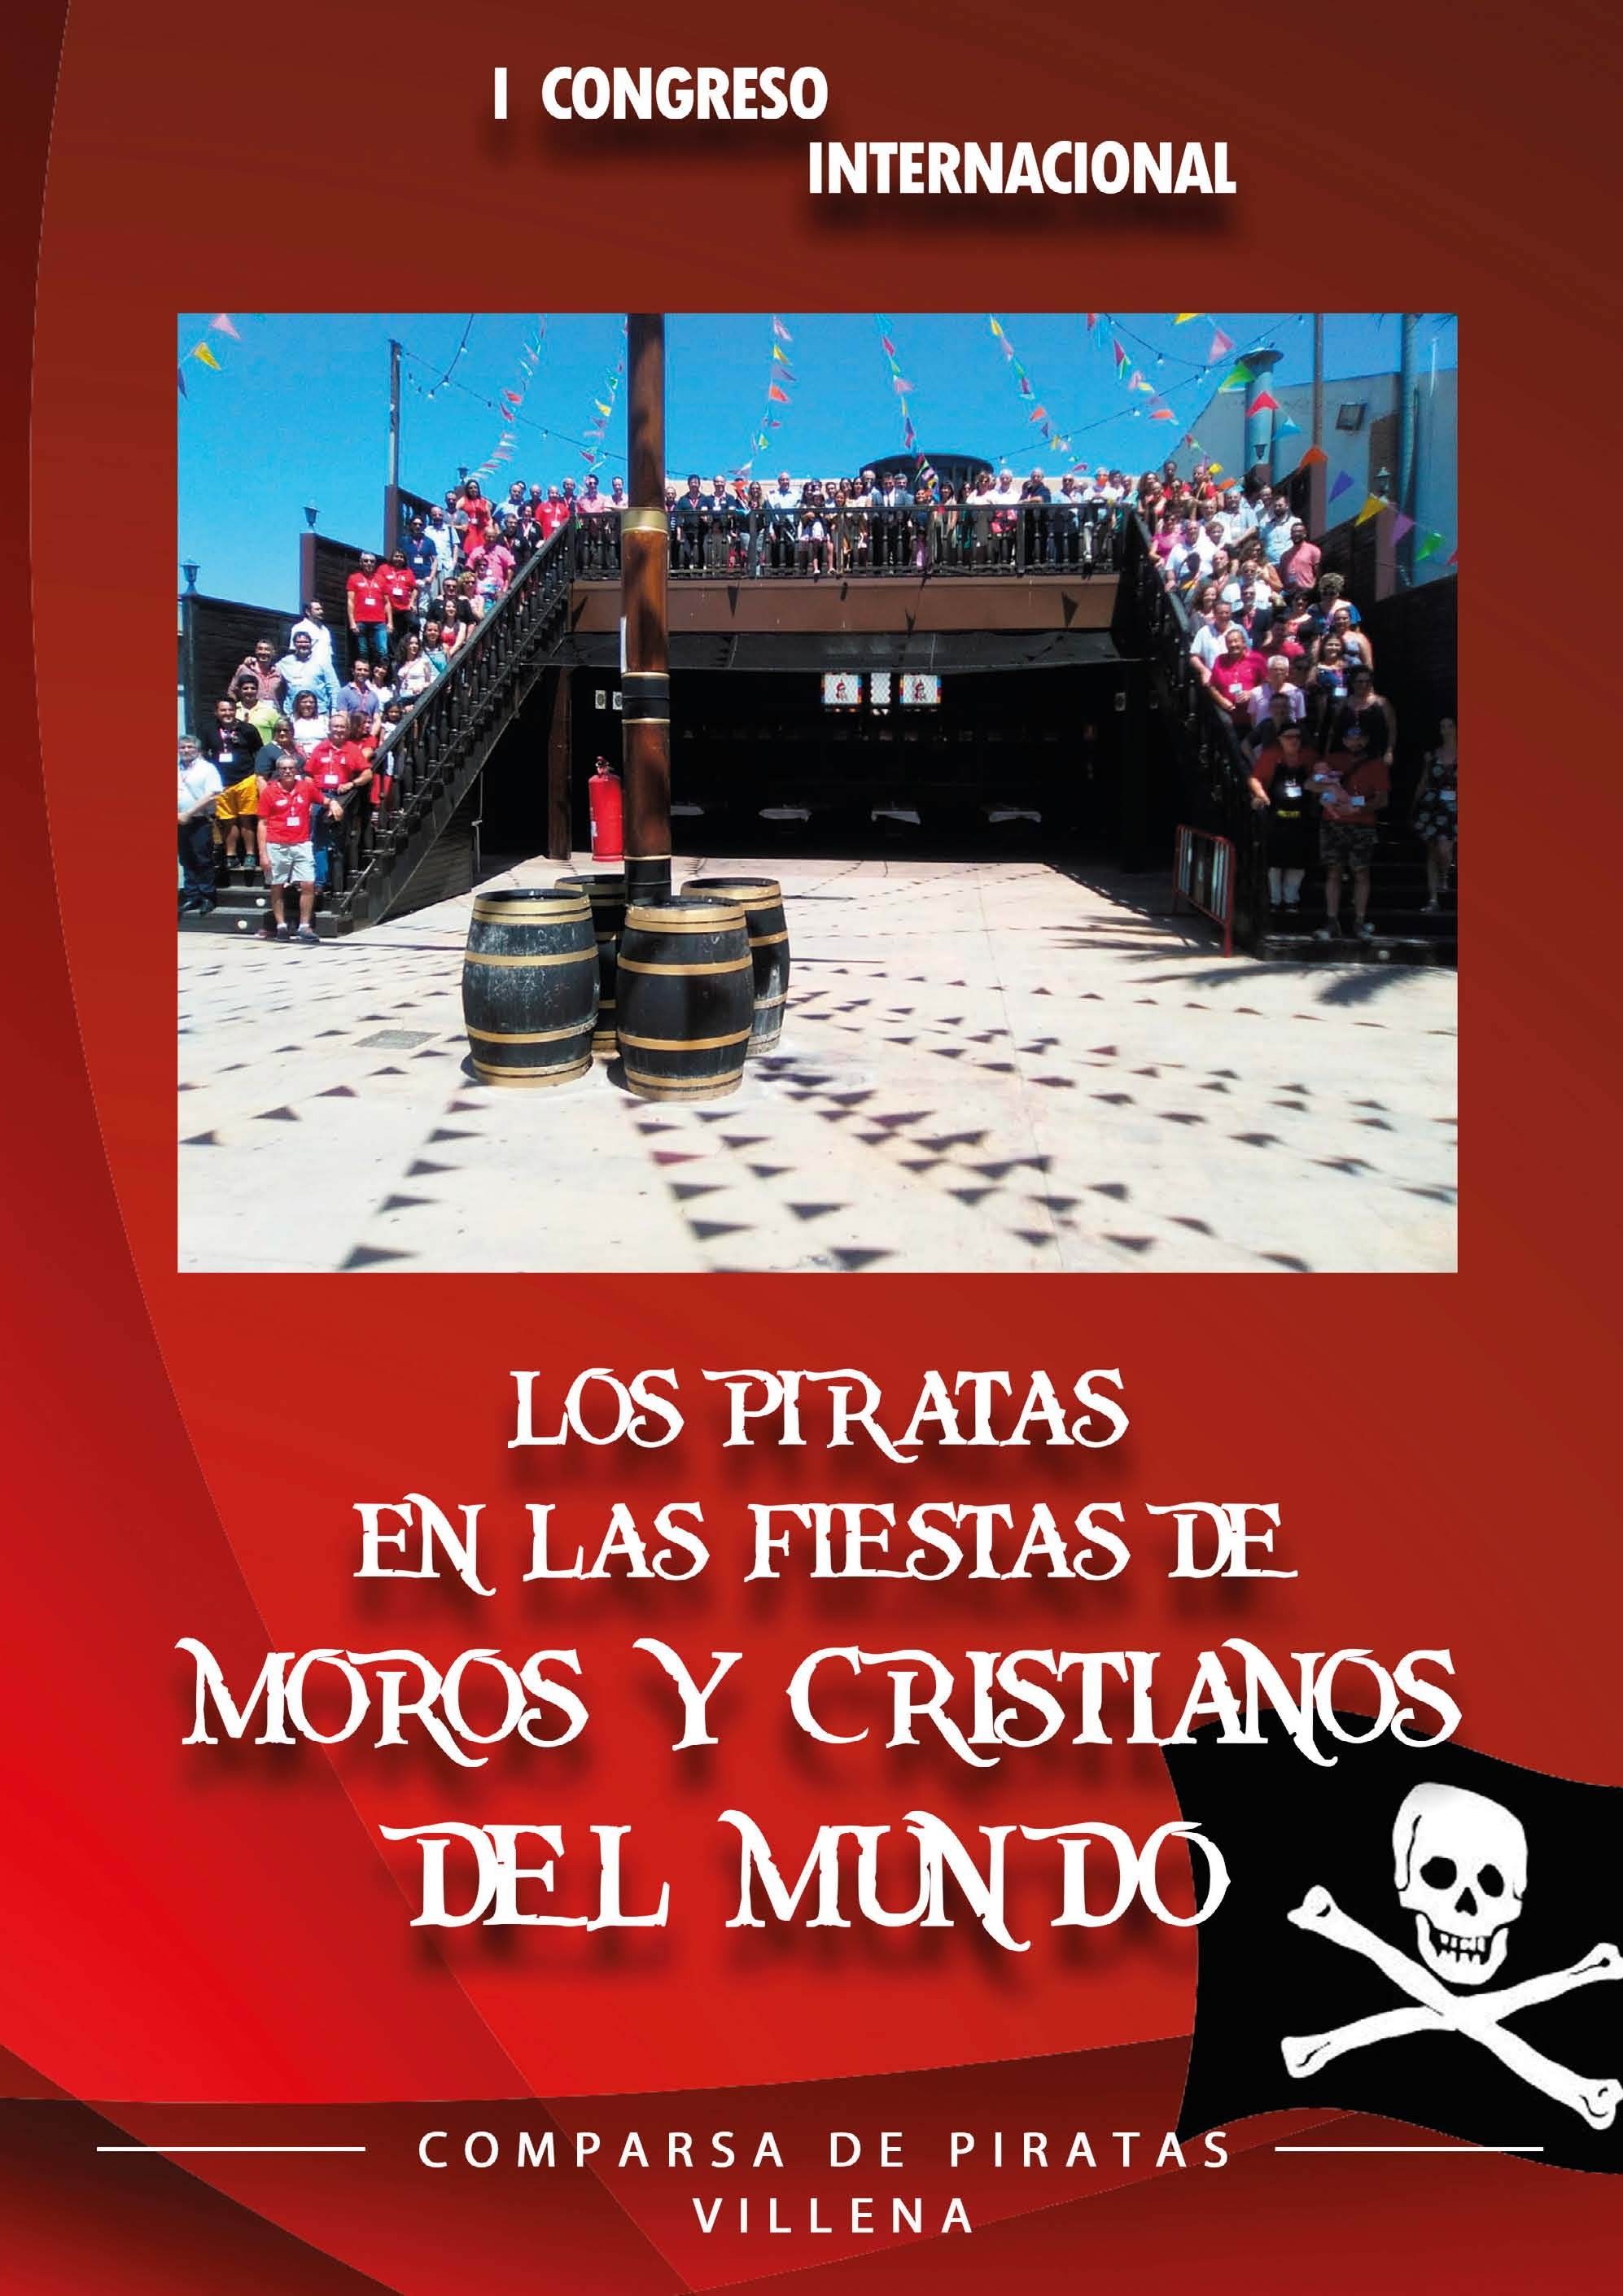 Los piratas en las fiestas de moros y cristianos del mundo